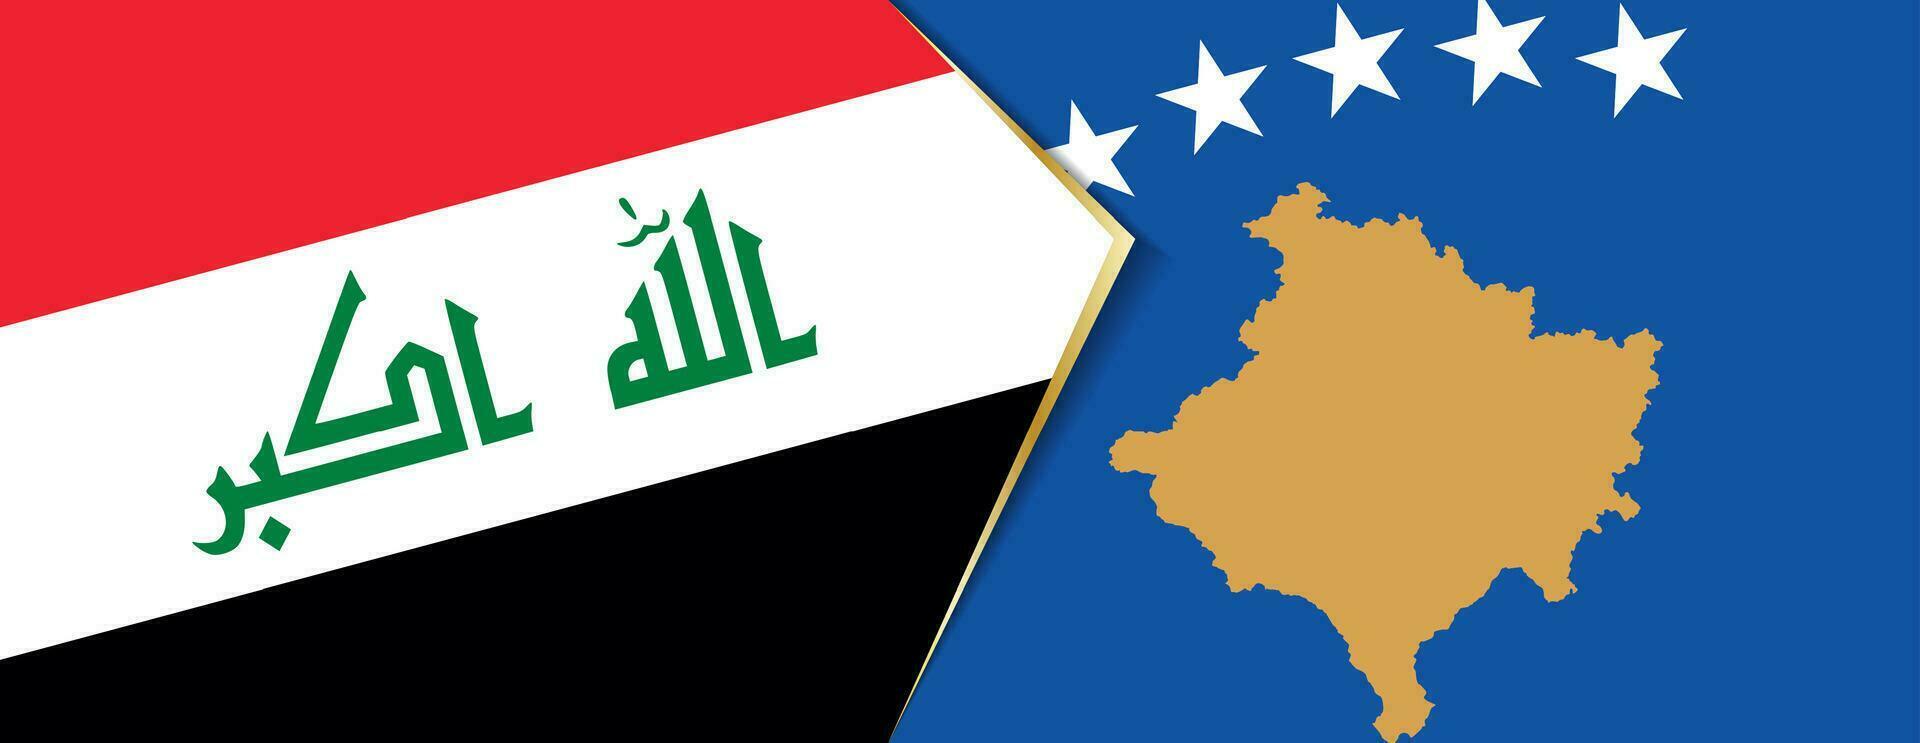 irak och kosovo flaggor, två vektor flaggor.